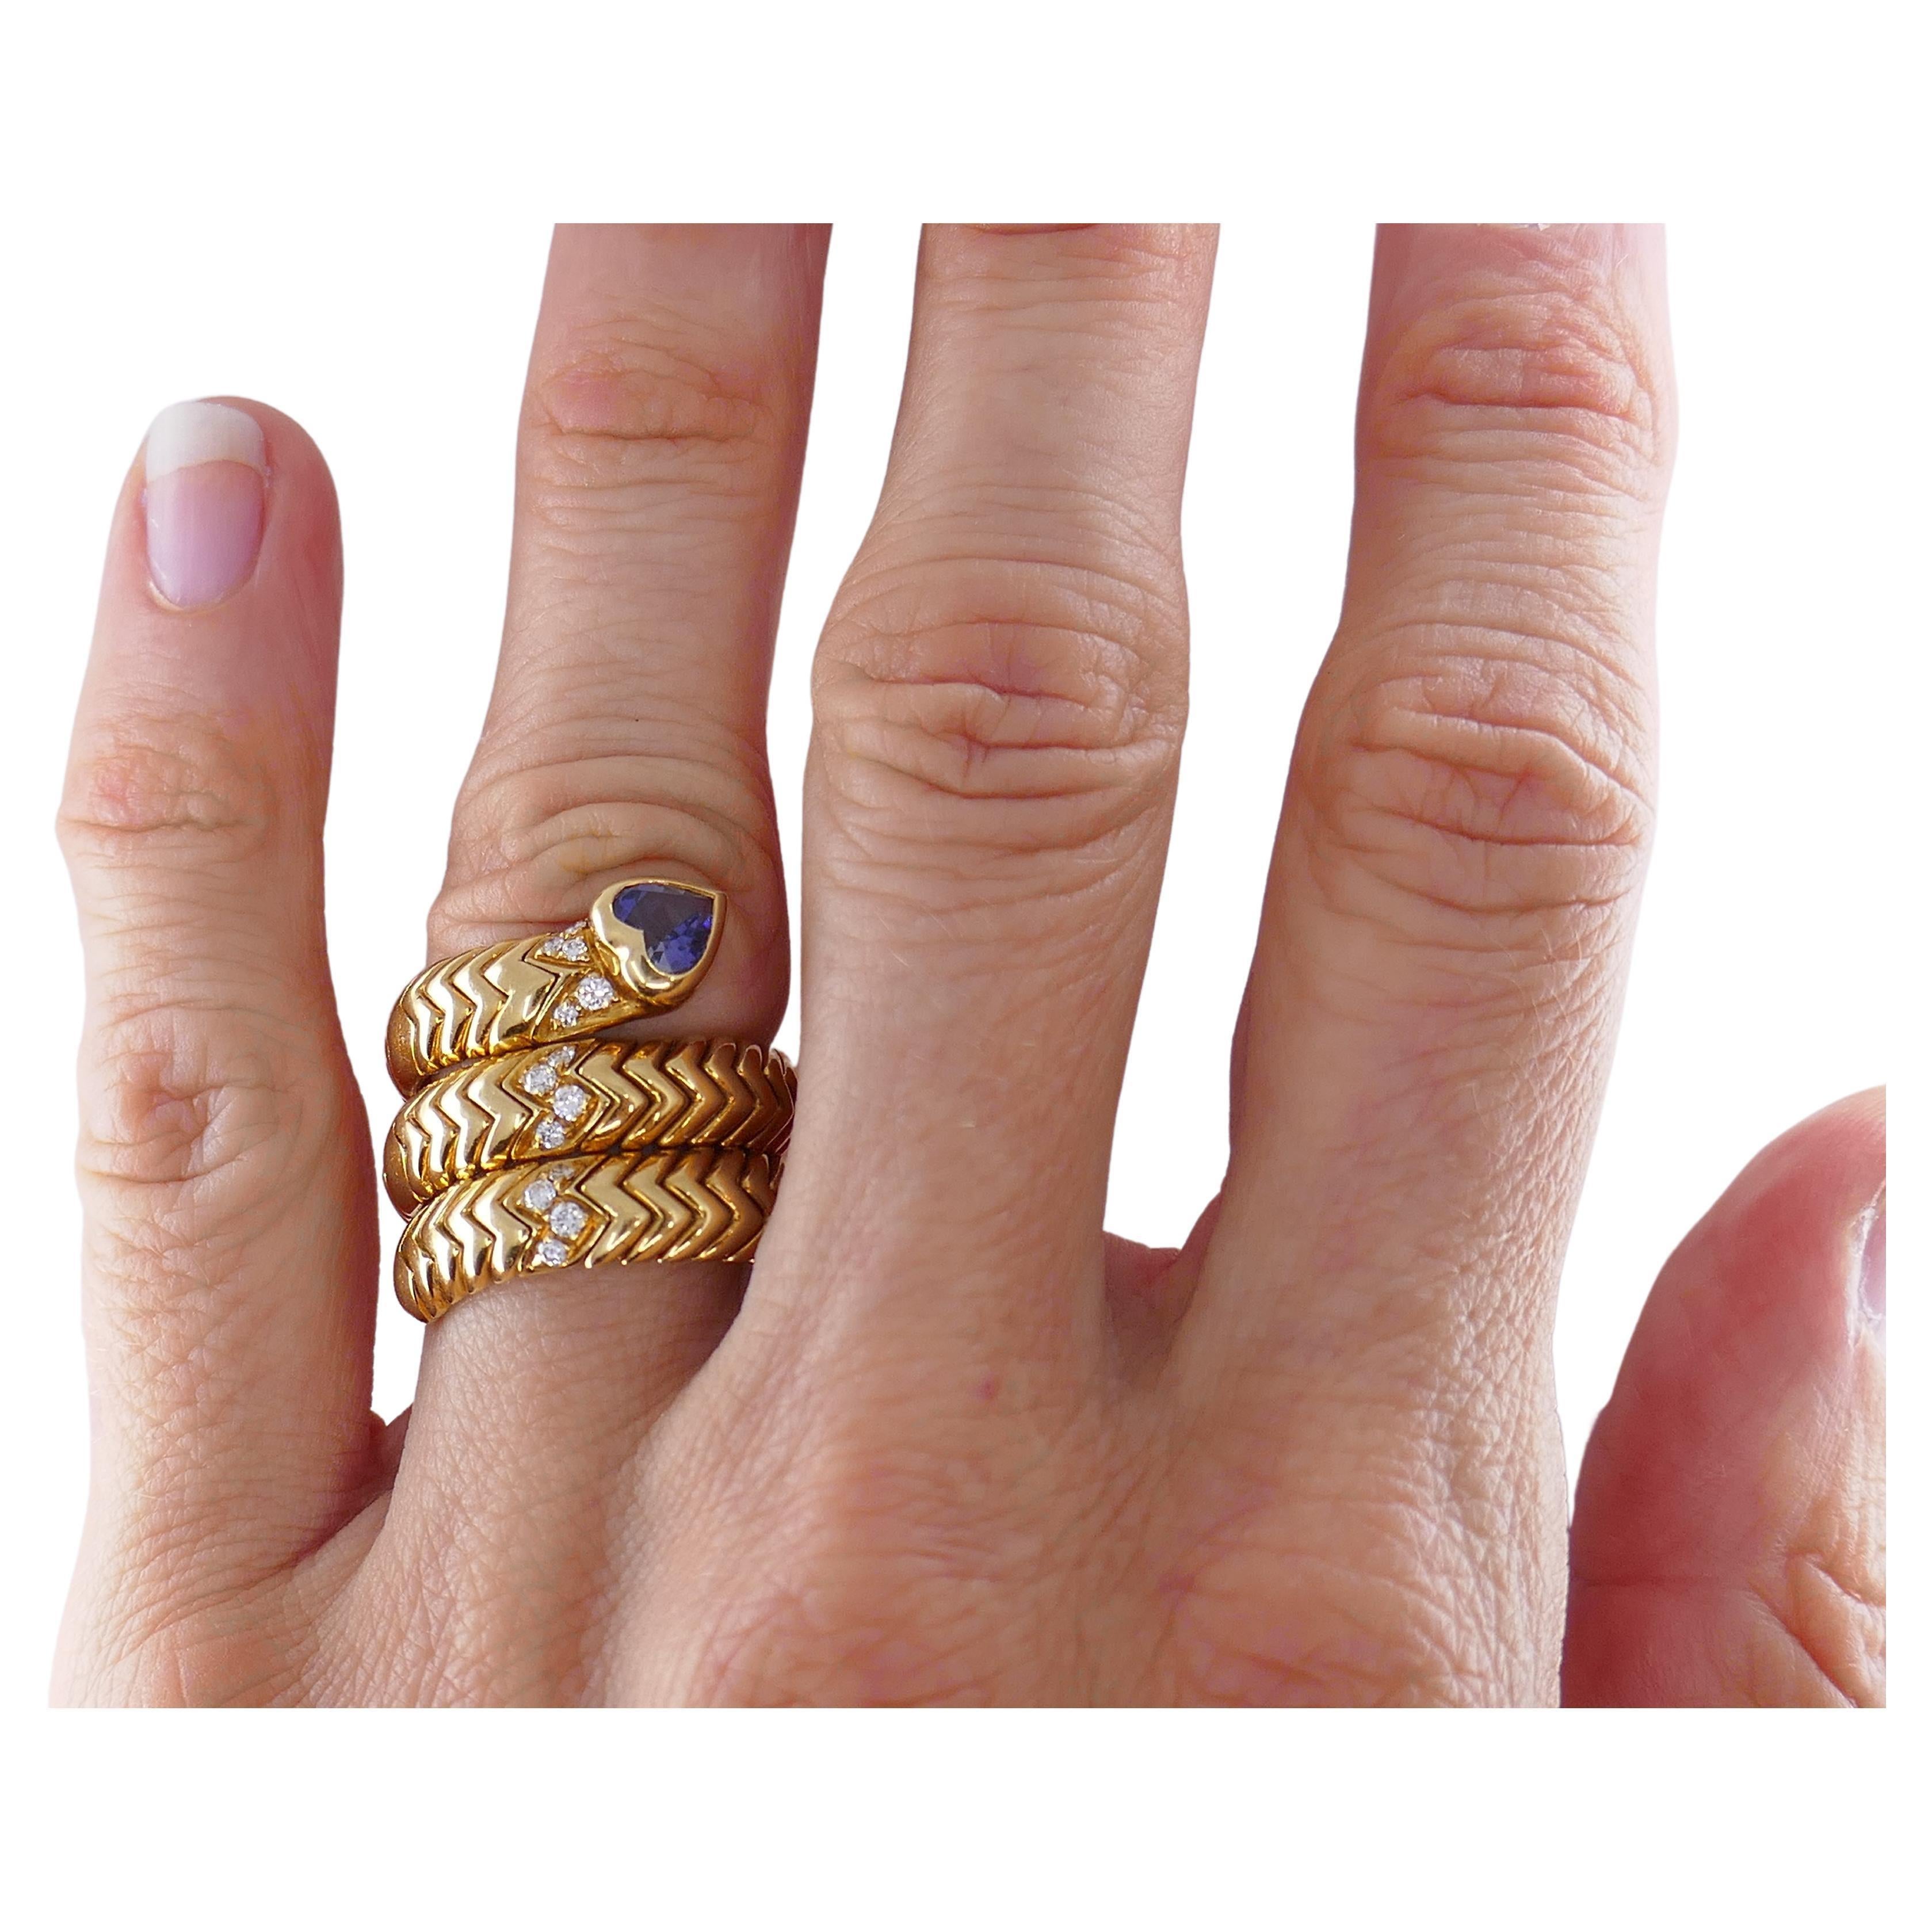 Ein ikonischer Ring von Bulgari Spiga, mit Diamanten und einem herzförmigen Saphir.
Ein glänzender, dreireihiger Wickelring mit dem berühmten Spiga-Muster ist einfach eine Perfektion. Glitzernde Diamanten verleihen dem Look einen Hauch von Glamour.